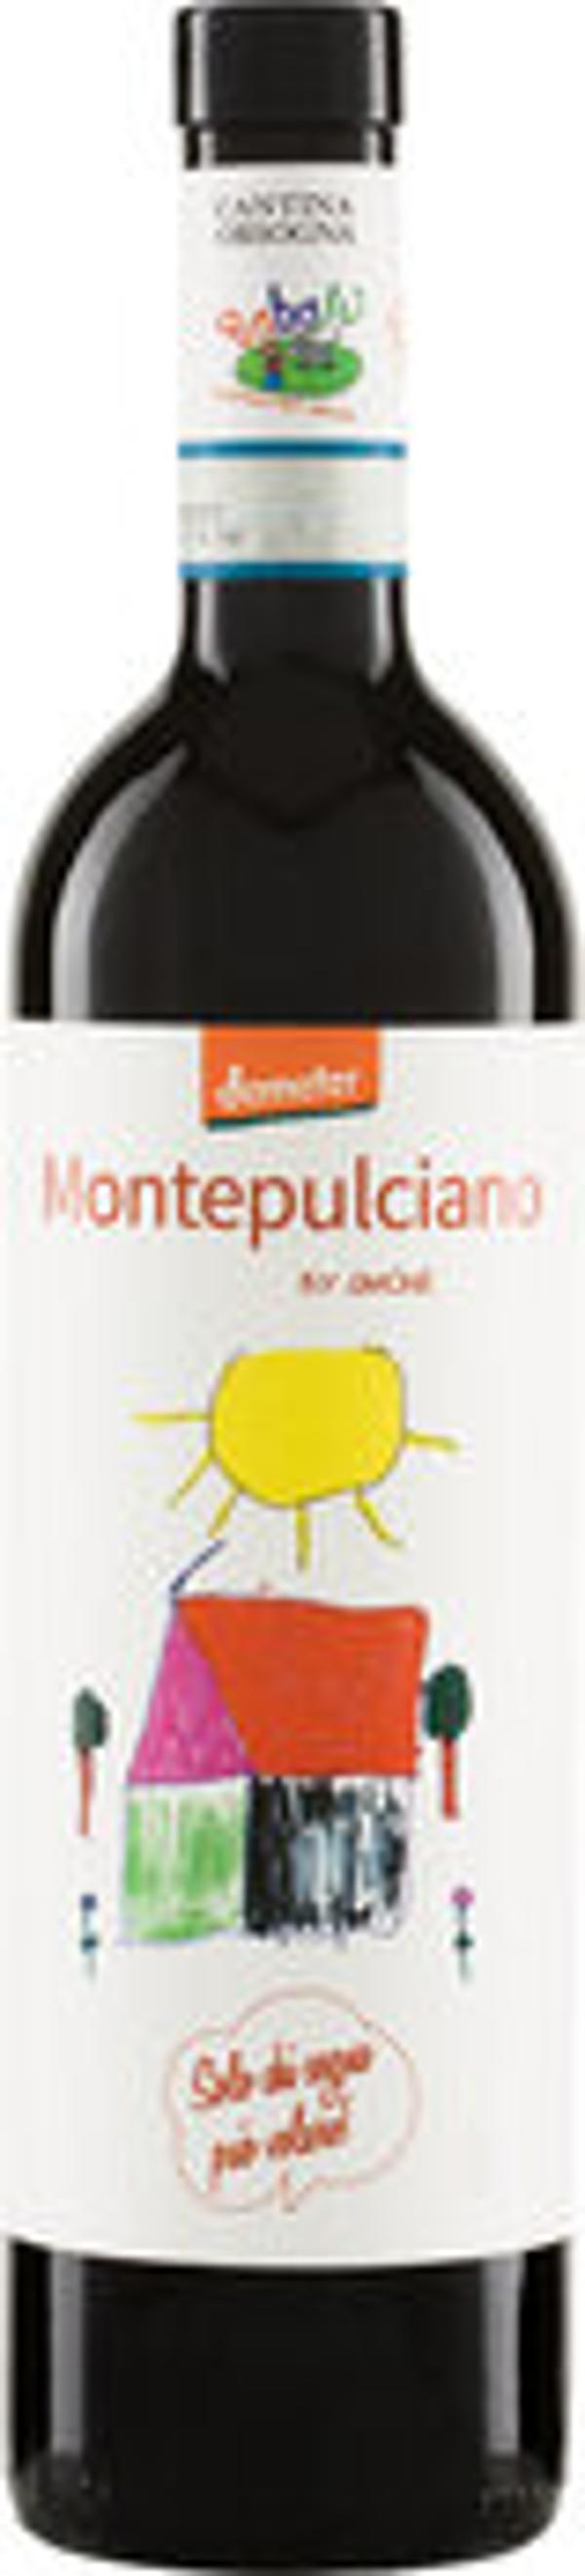 Produktfoto zu BABALÙ Montepulciano d'Abruzzo DOP